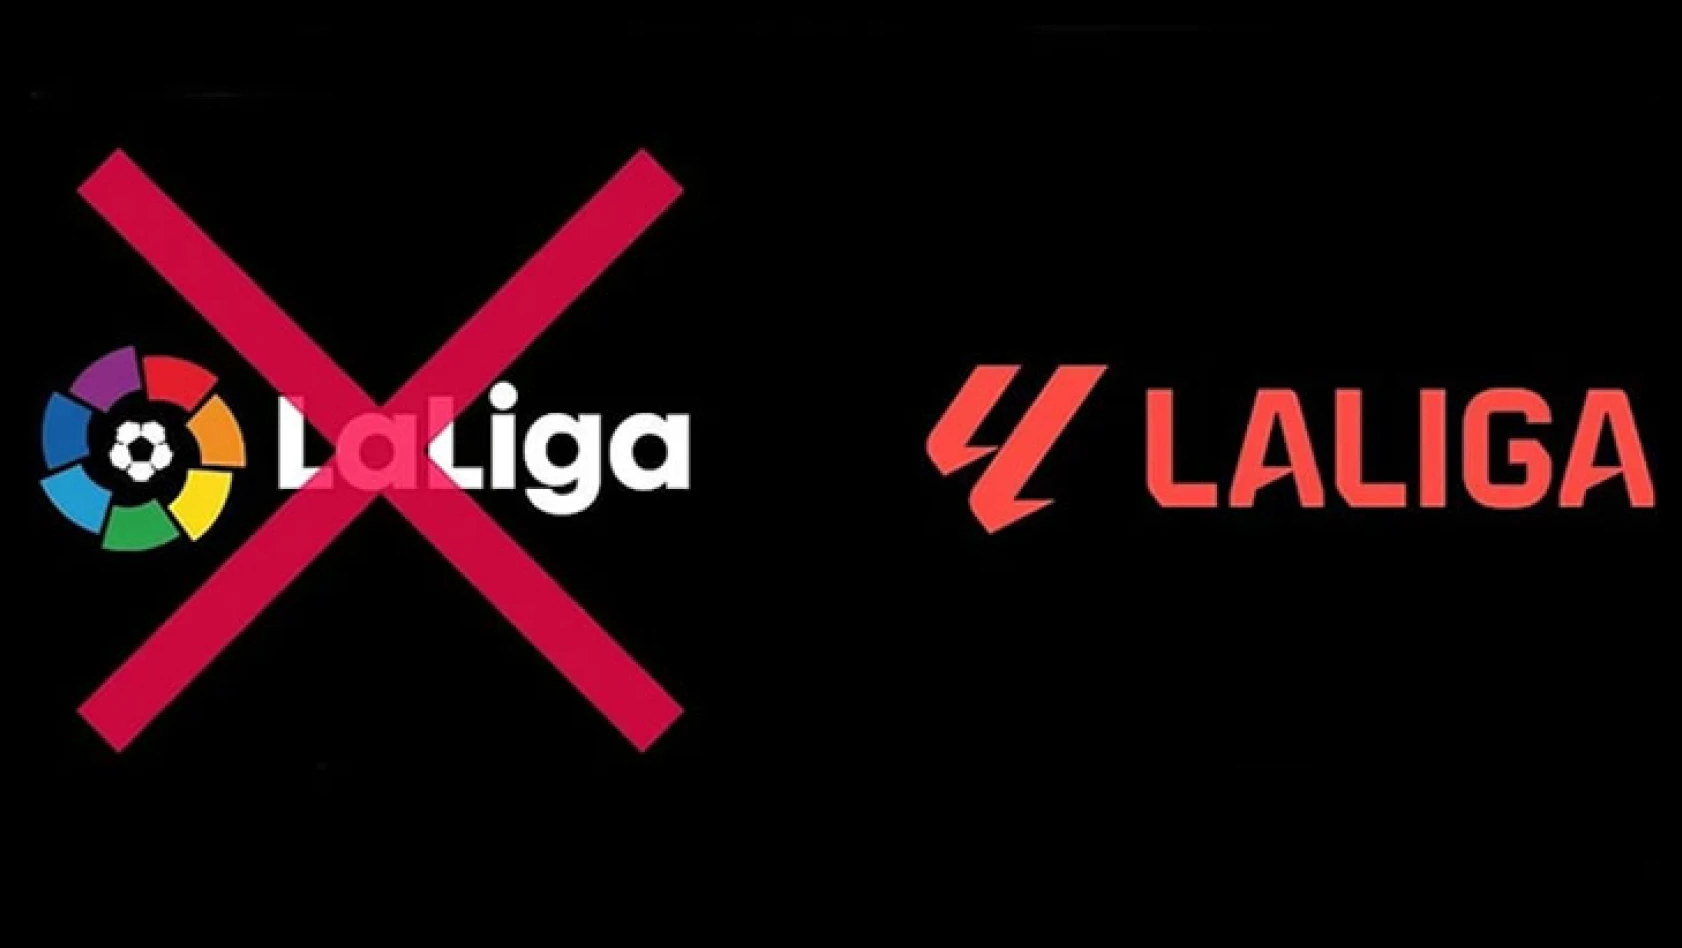 La Liga, EA Sports ile yeni sponsorluk anlaşması! Gelir iki katına çıktı!